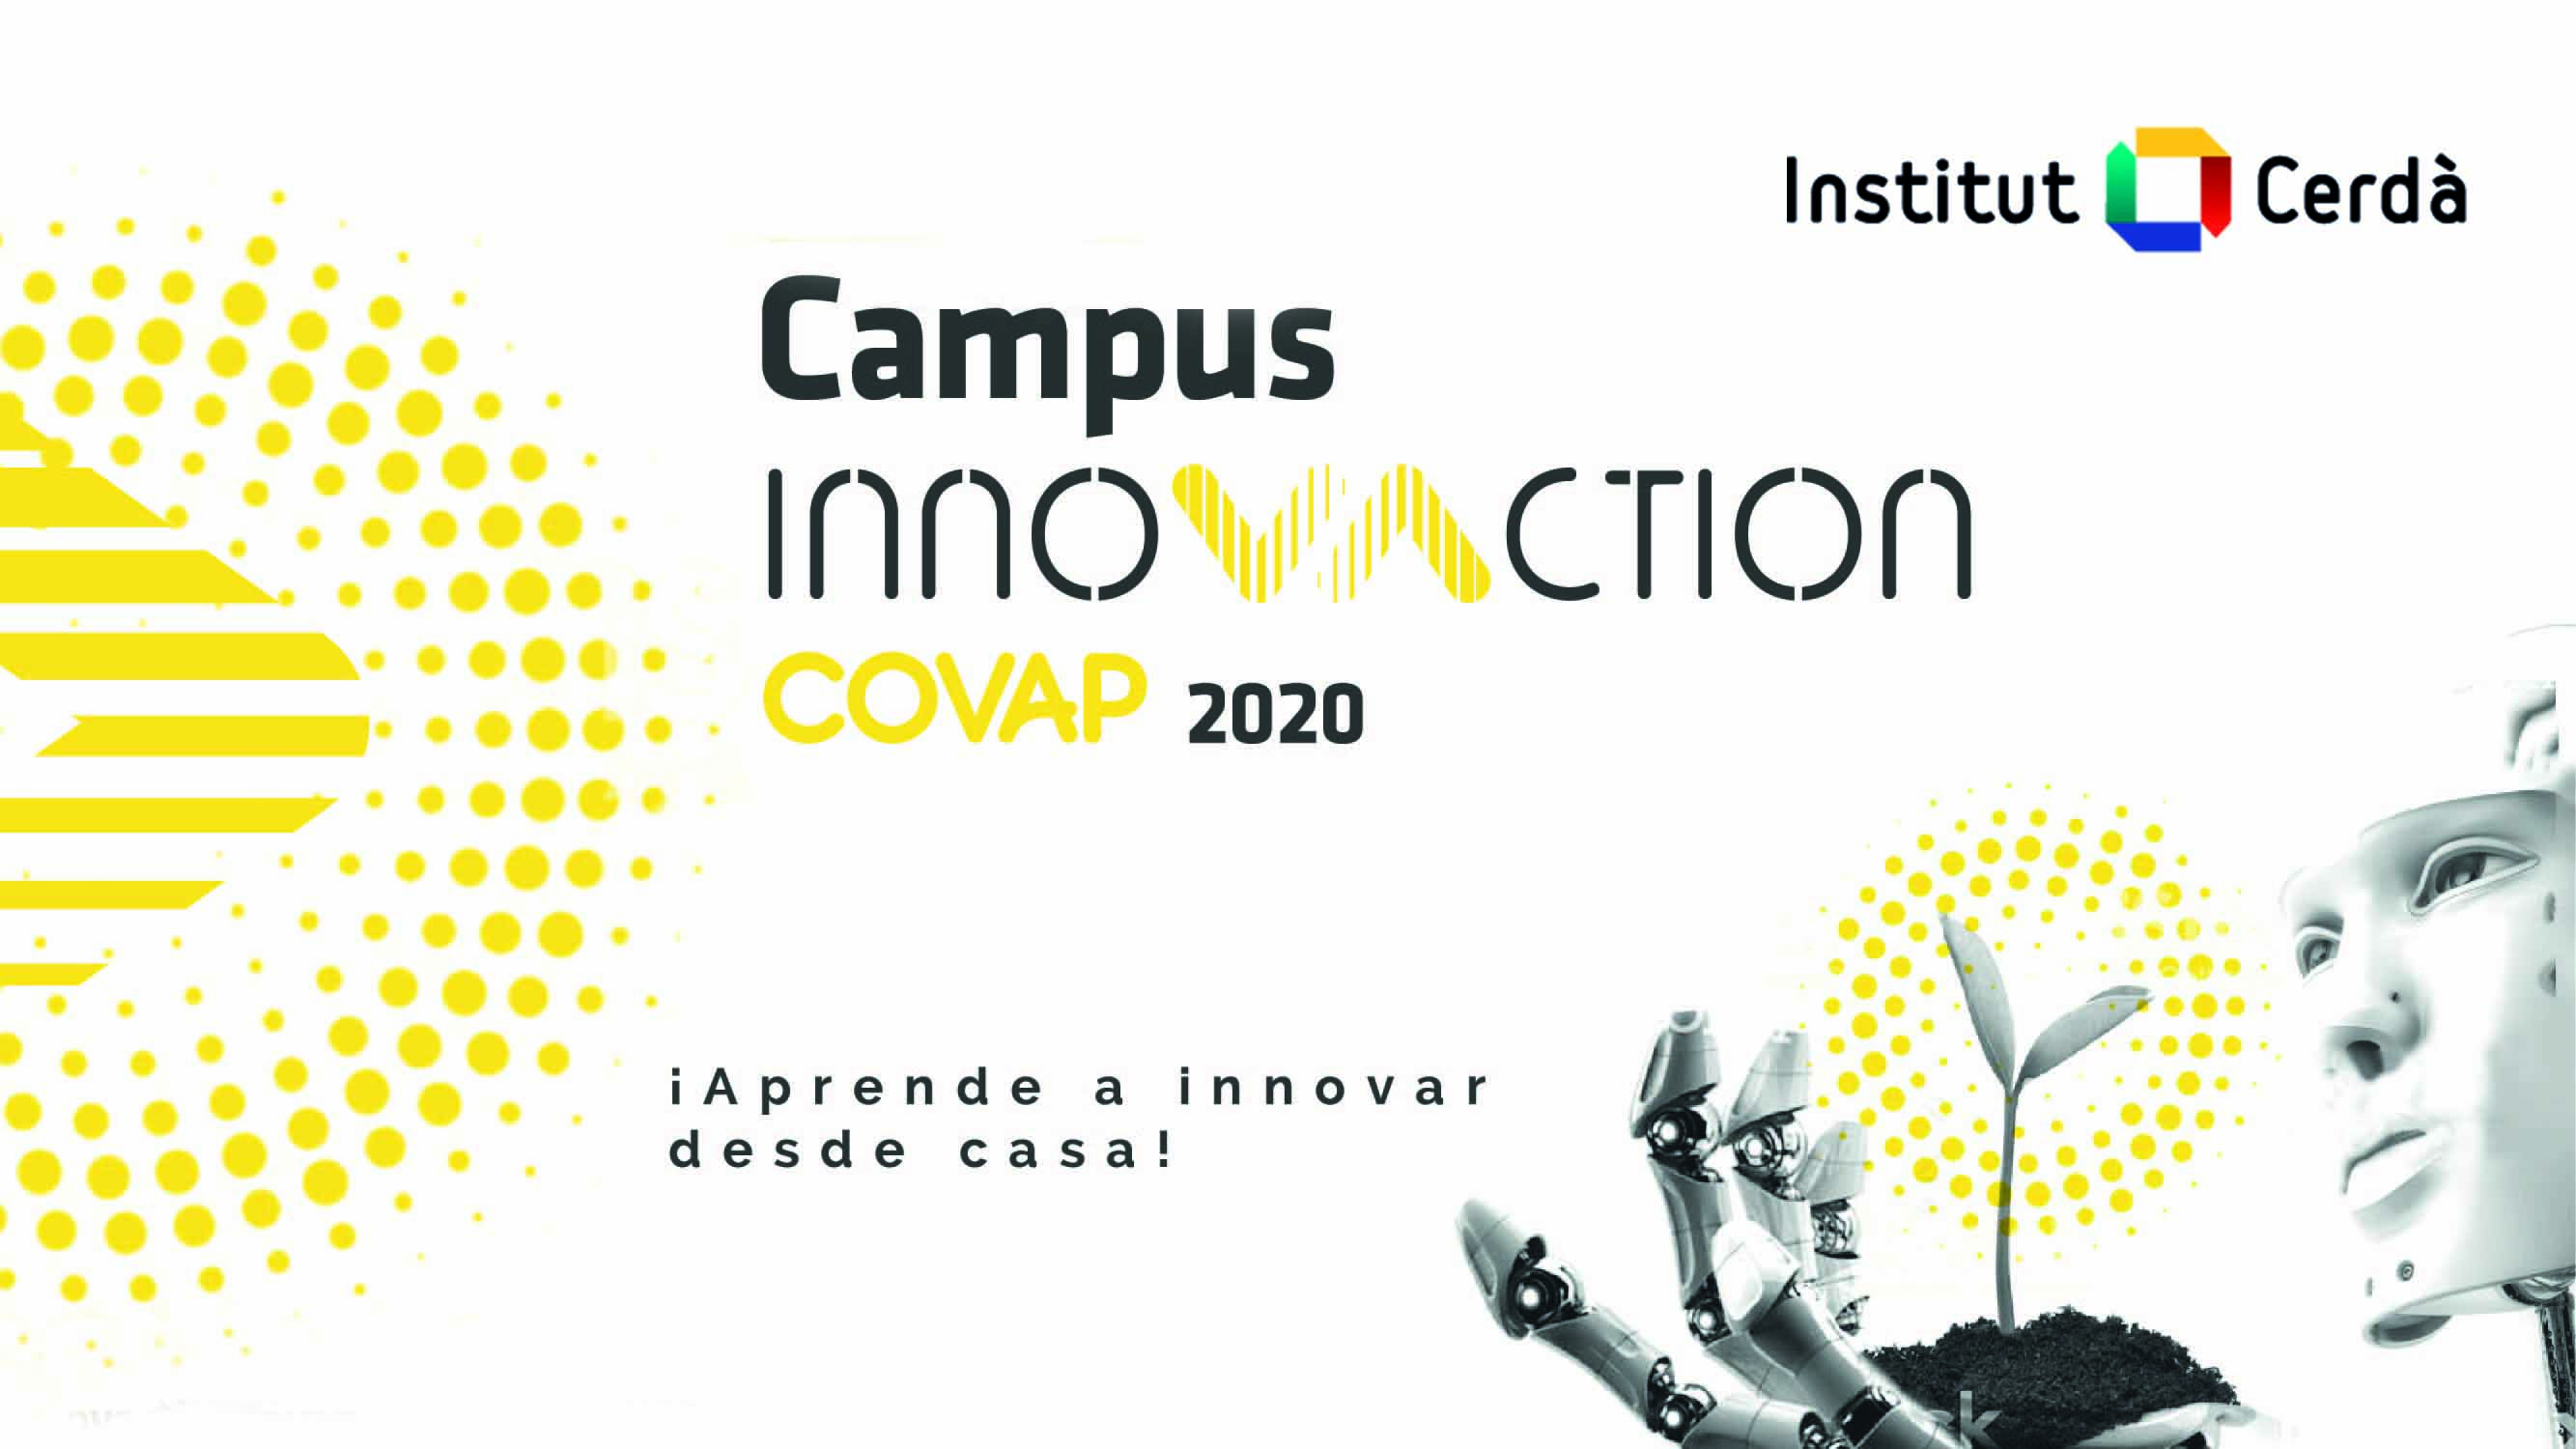 Observatorio de Innovación en Gran Consumo destaca el Campus Innovaction COVAP | COVAP